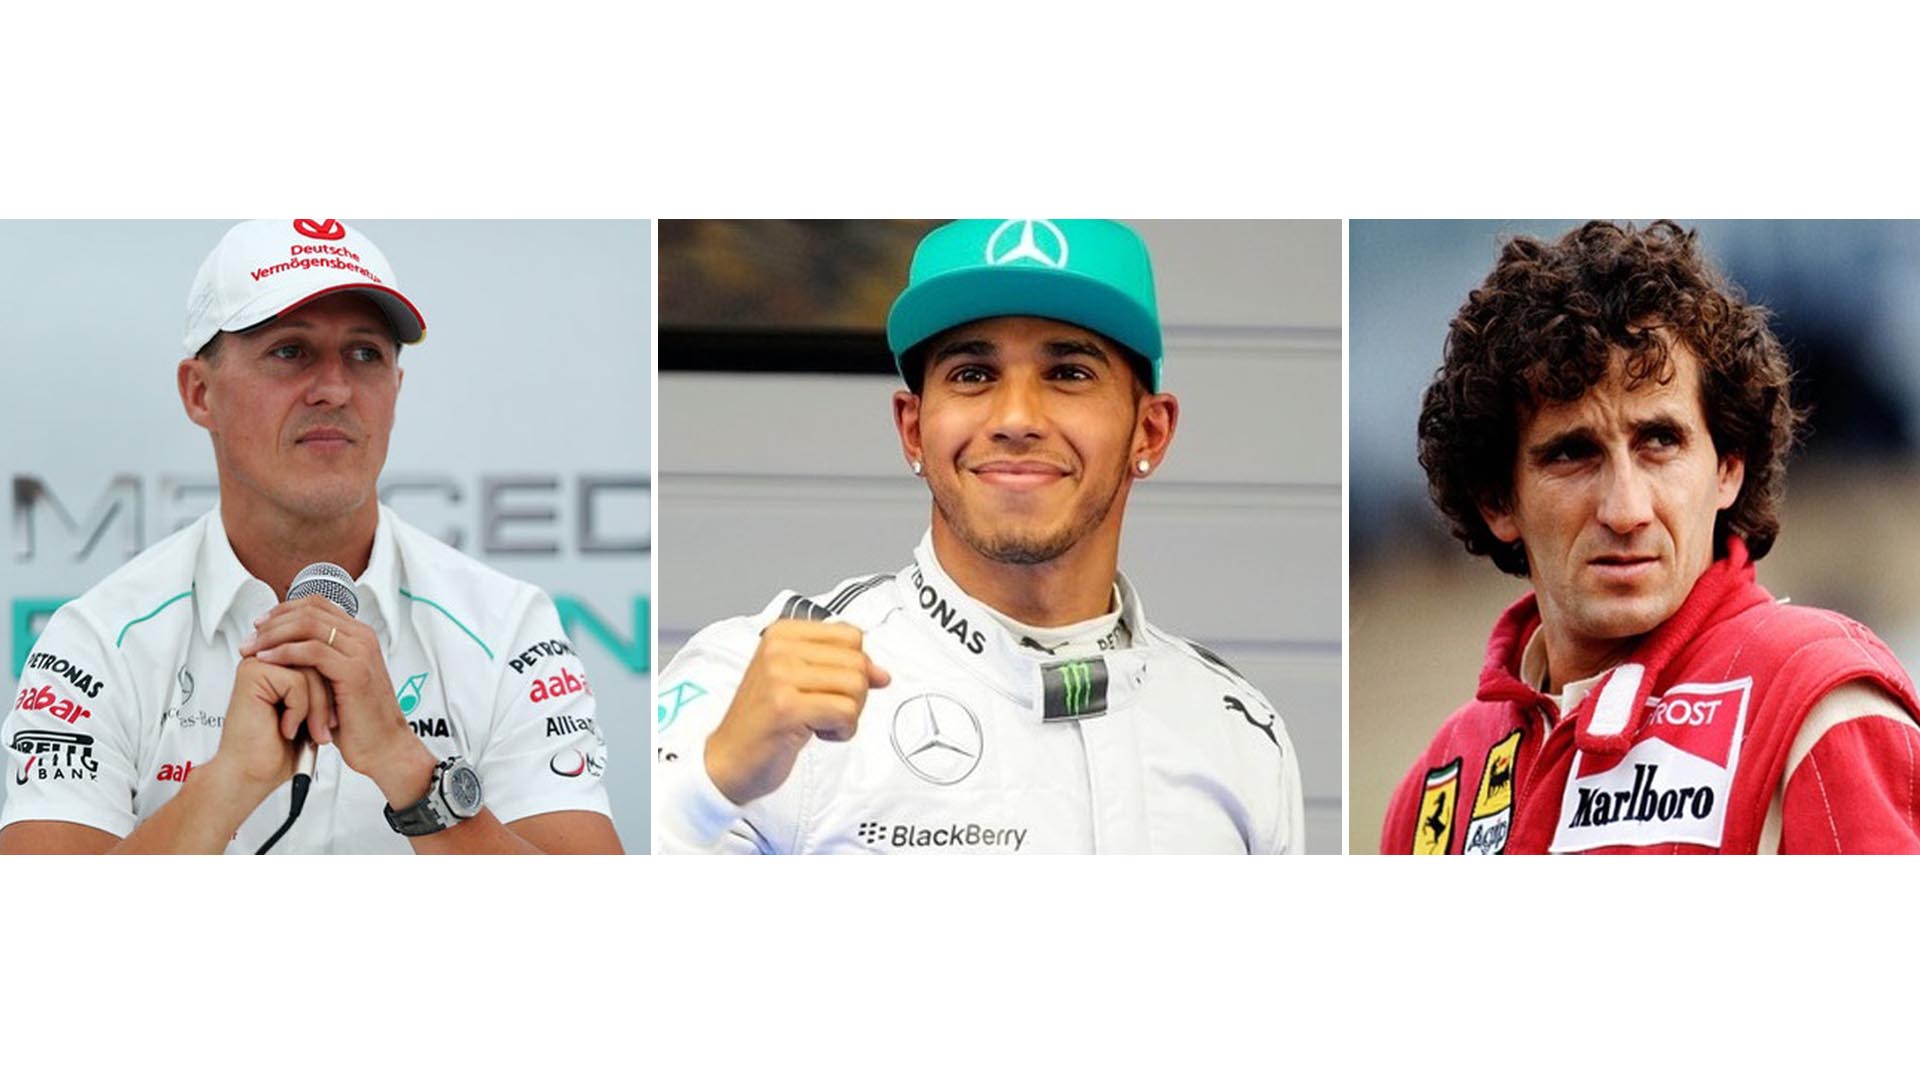 El alemán Michael Schumacher, el británico Lewis Hamilton y el francés Alain Prost, son los pilotos que más victorias tienen en el deporte motor